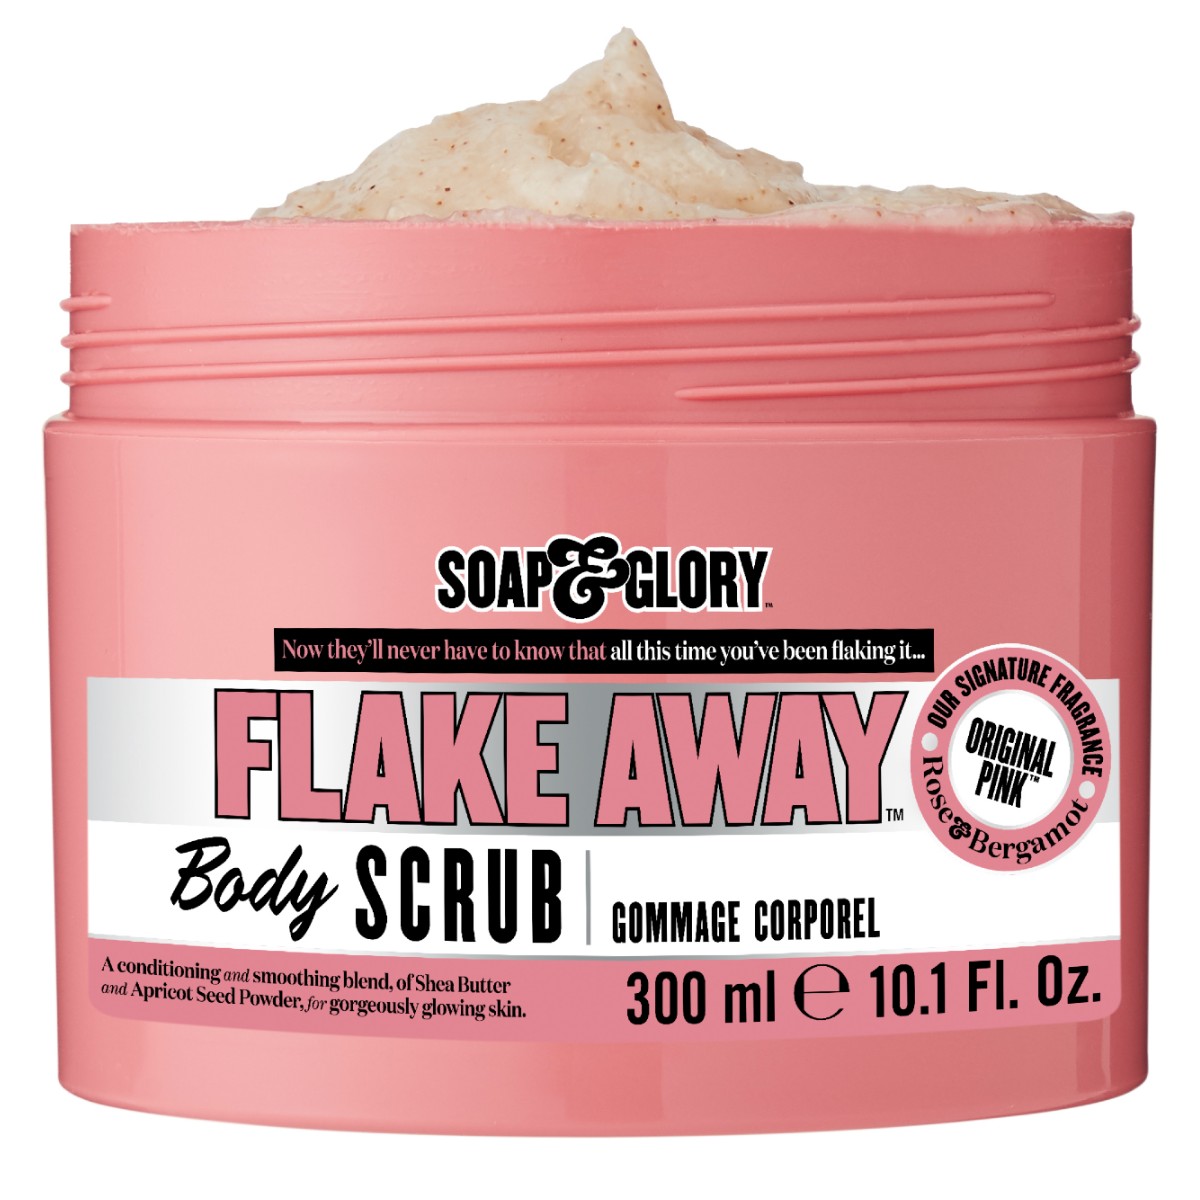 Original Pink Flake Away Exfoliating Body Scrub